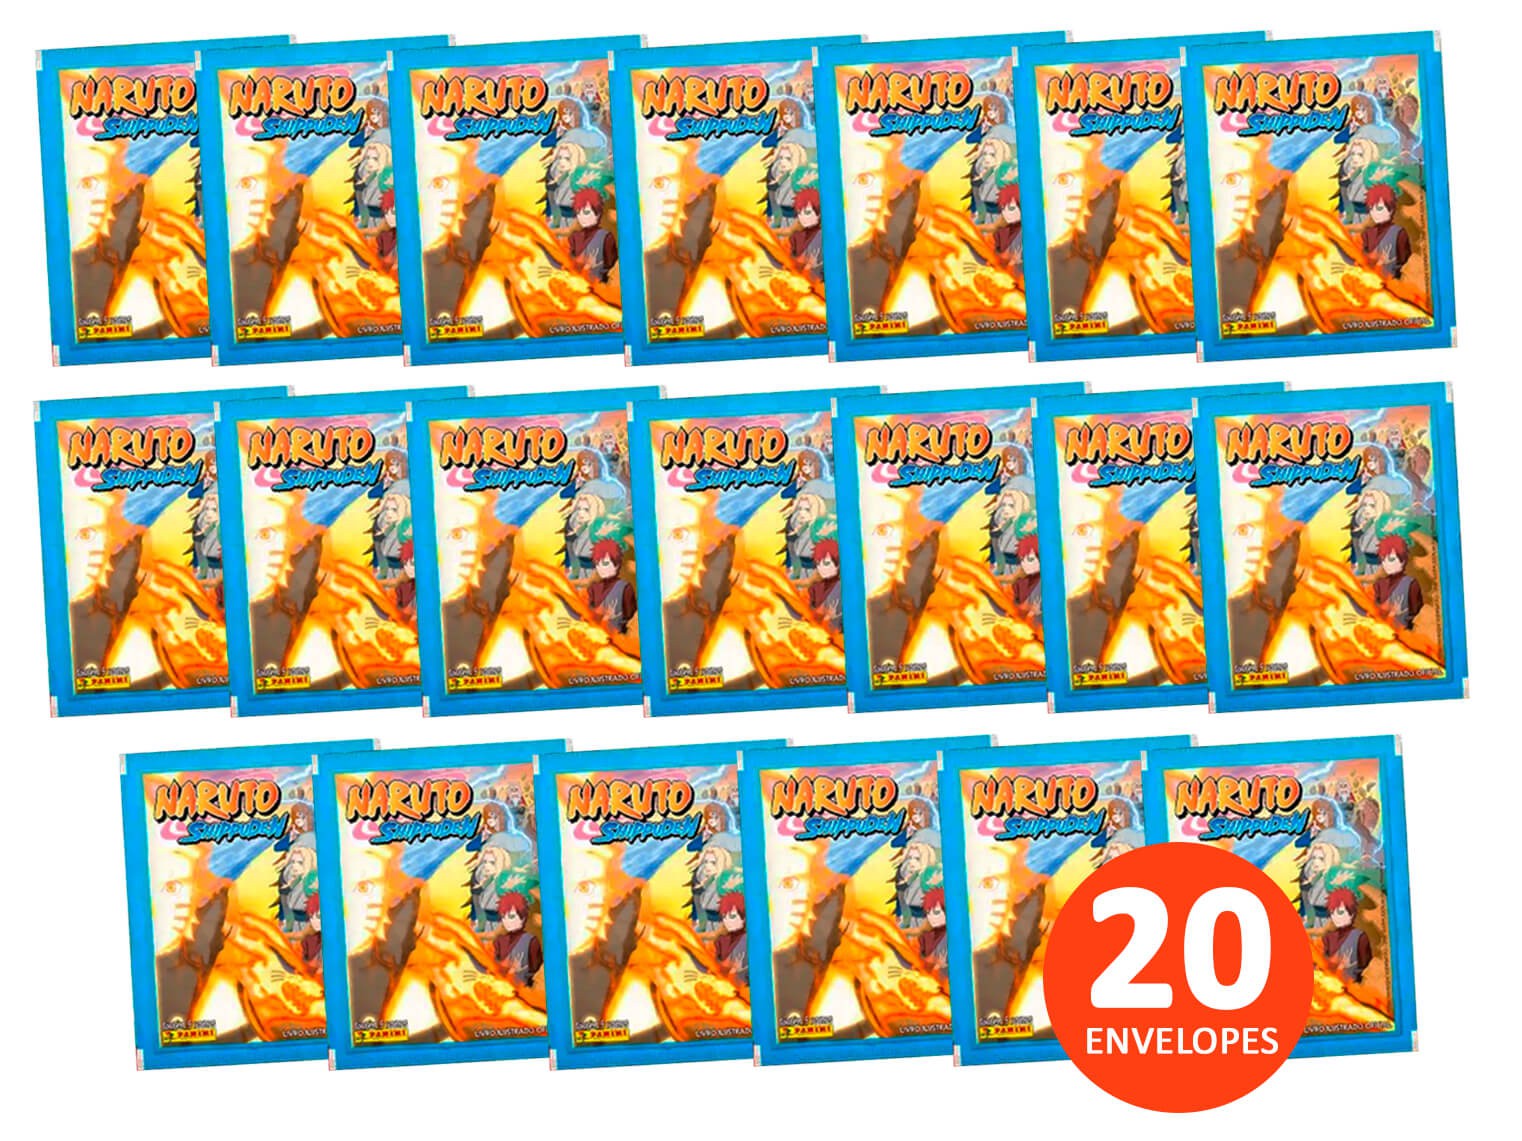 Álbum de Figurinhas Naruto Shippuden Completo para Colar, Brinquedo  Editora Panini 2016 Usado 84059860